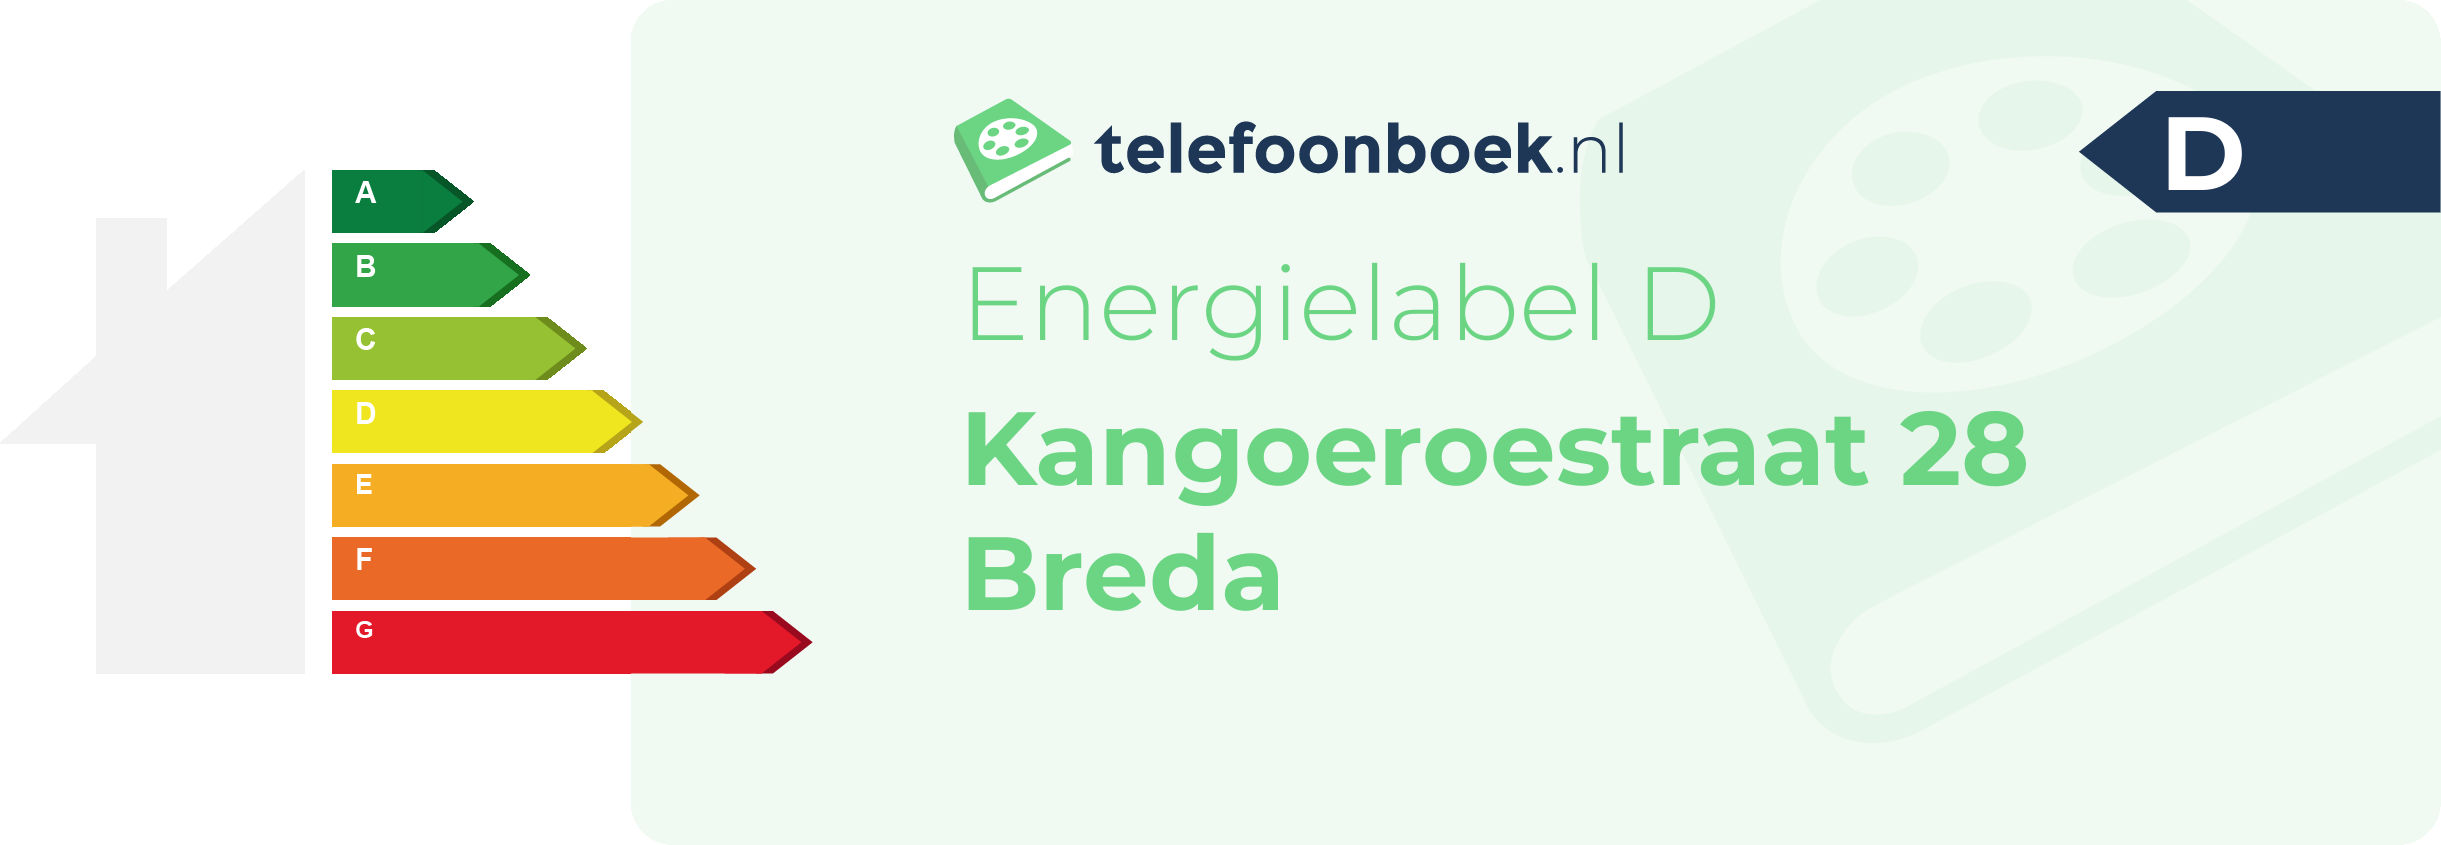 Energielabel Kangoeroestraat 28 Breda